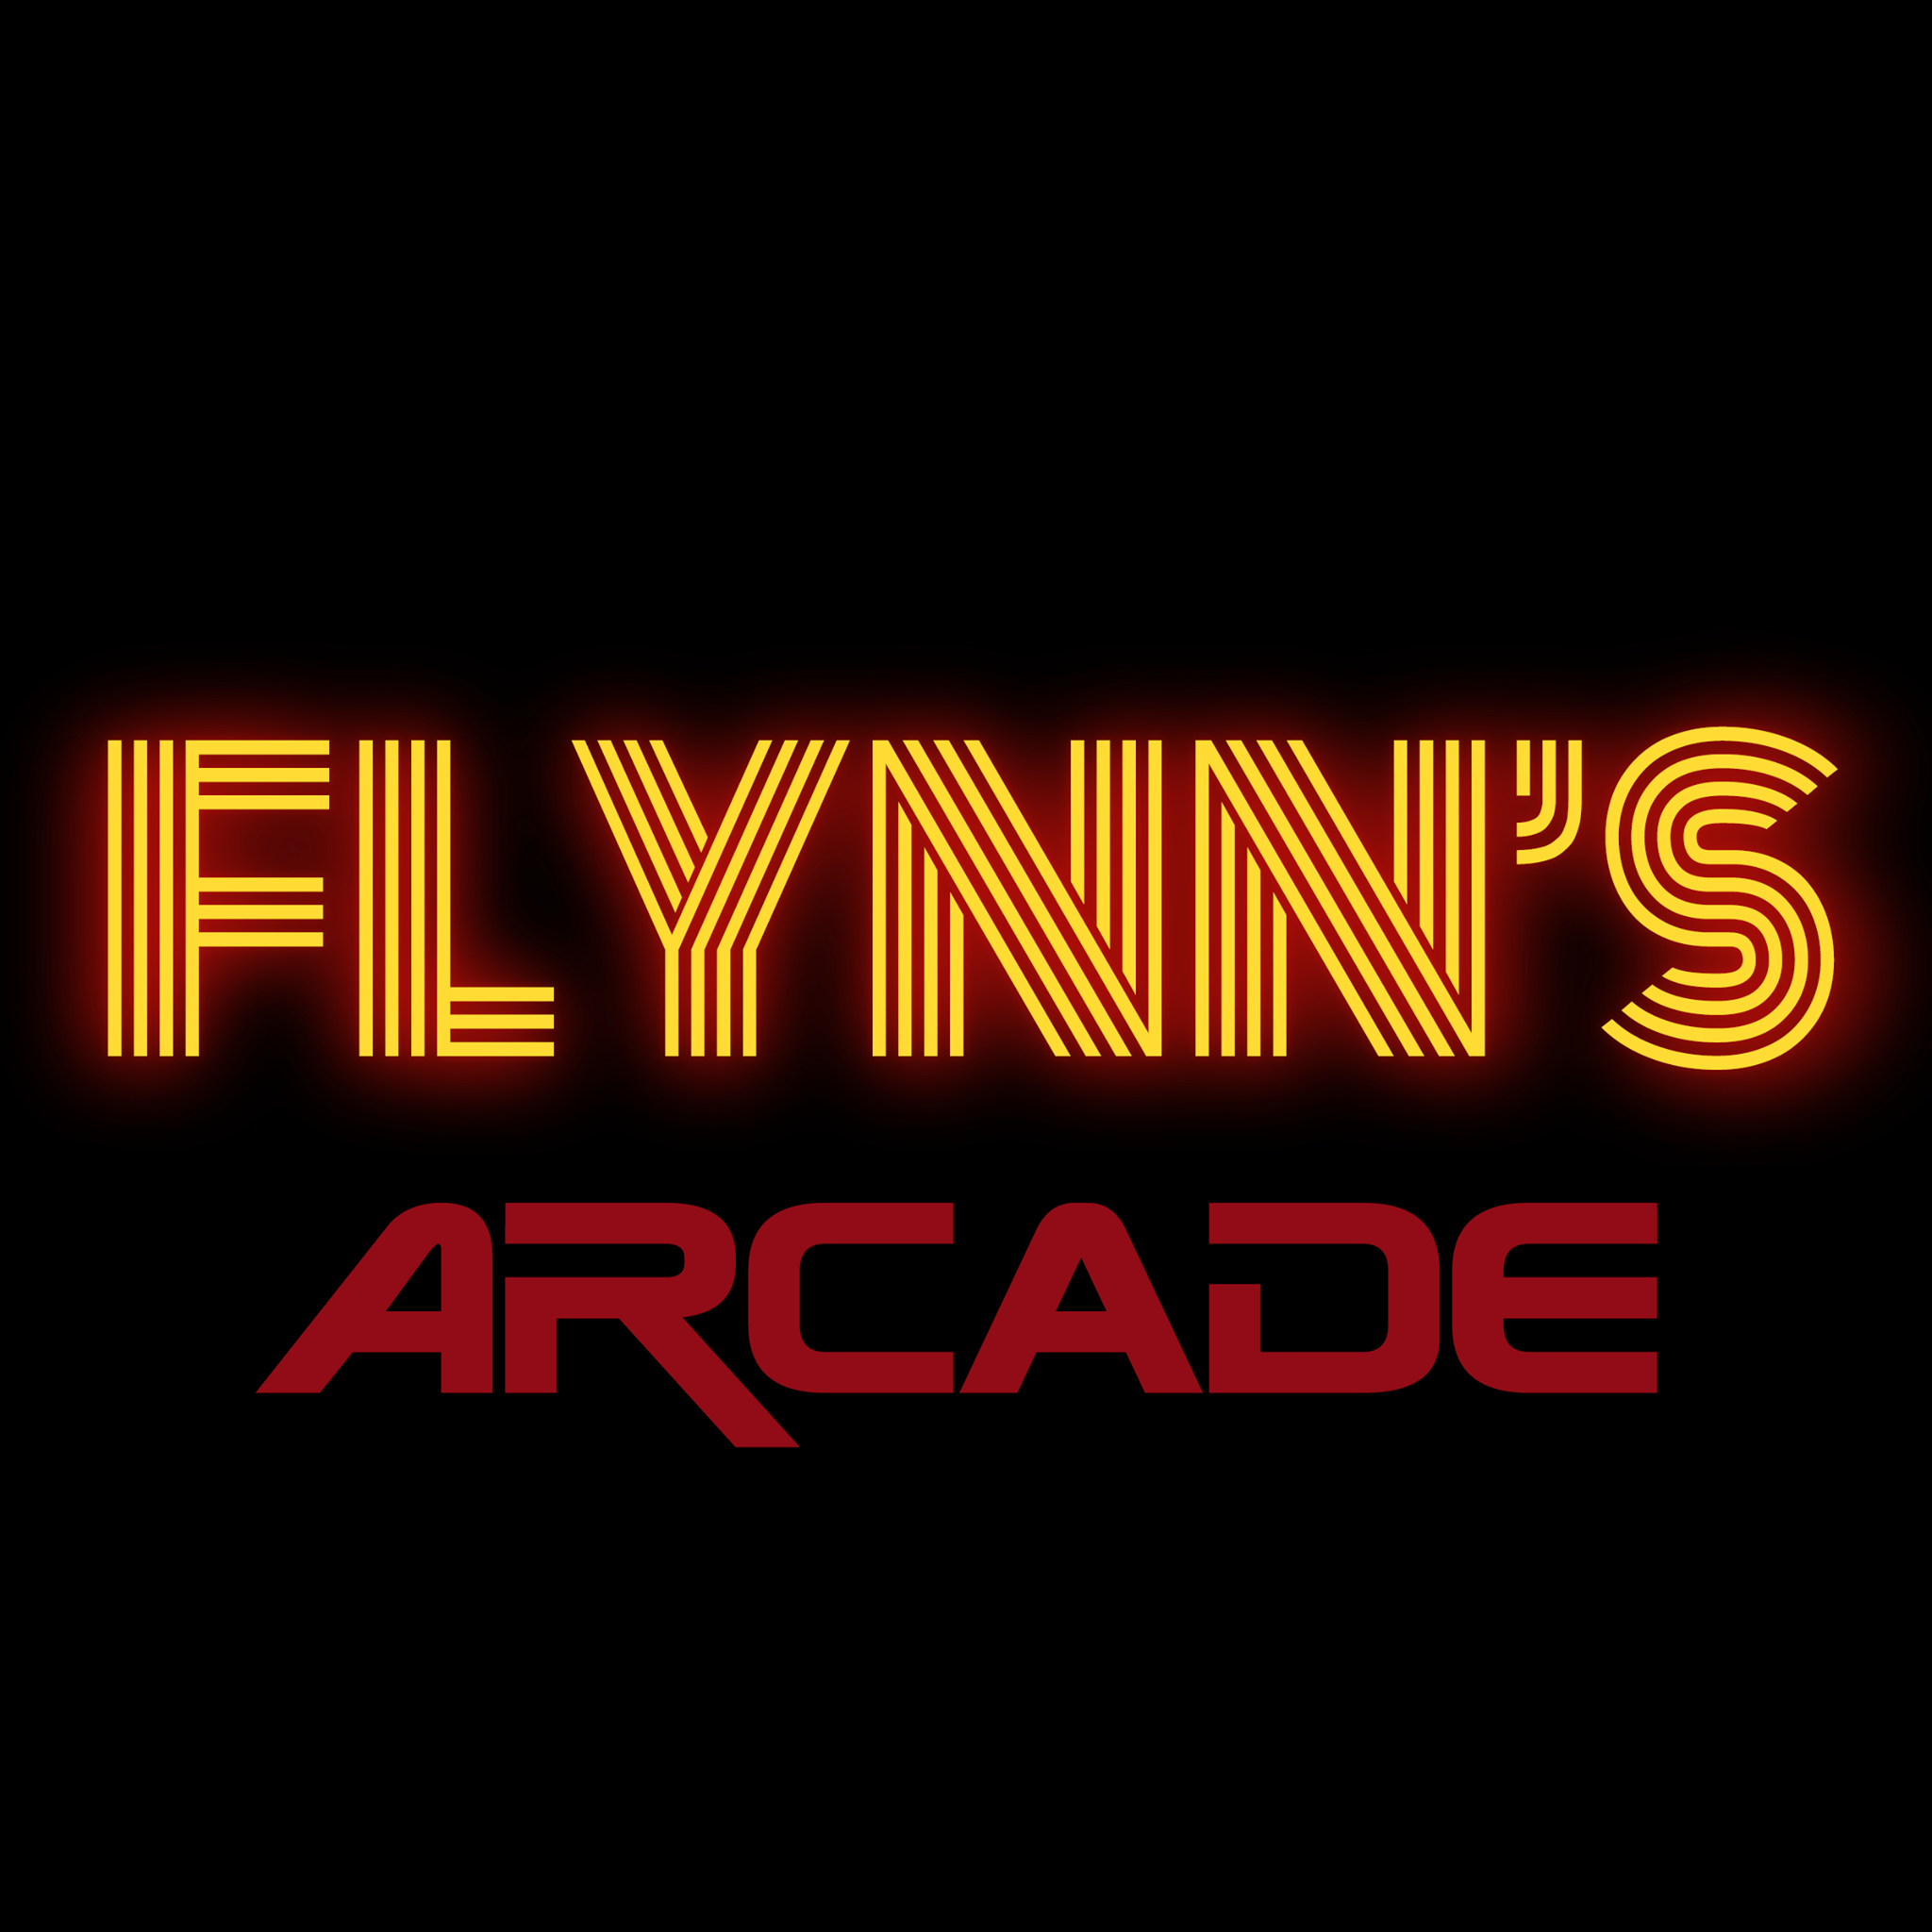 Flynn's Arcade